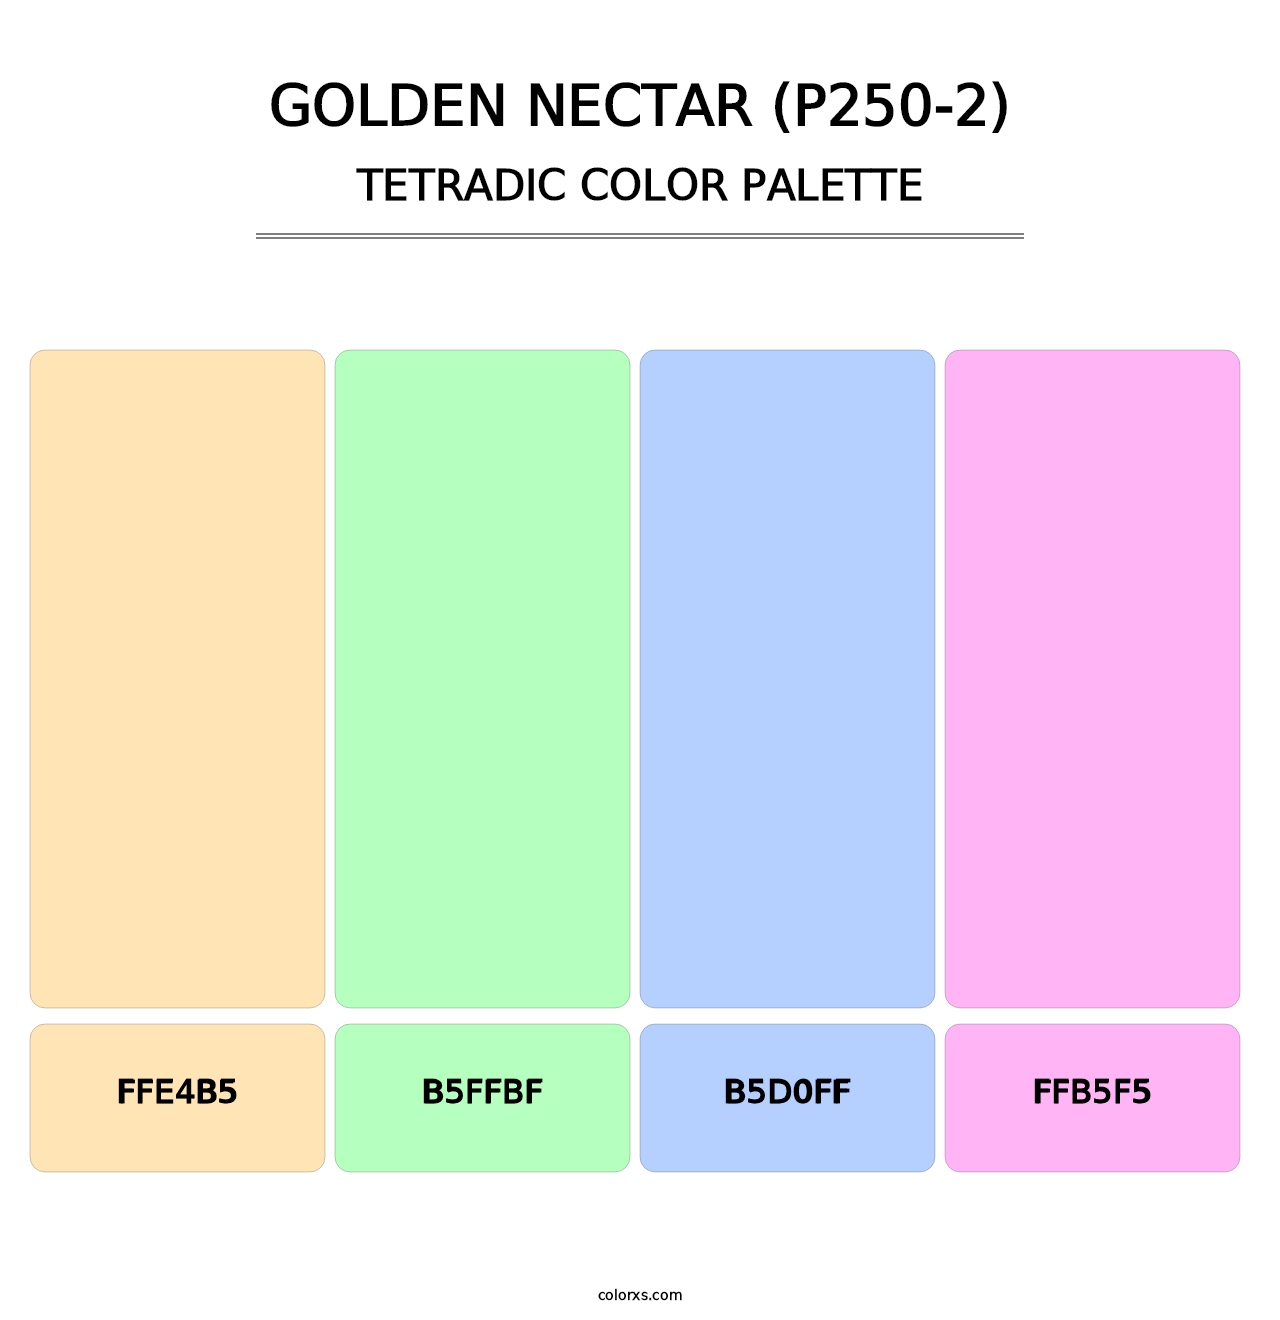 Golden Nectar (P250-2) - Tetradic Color Palette